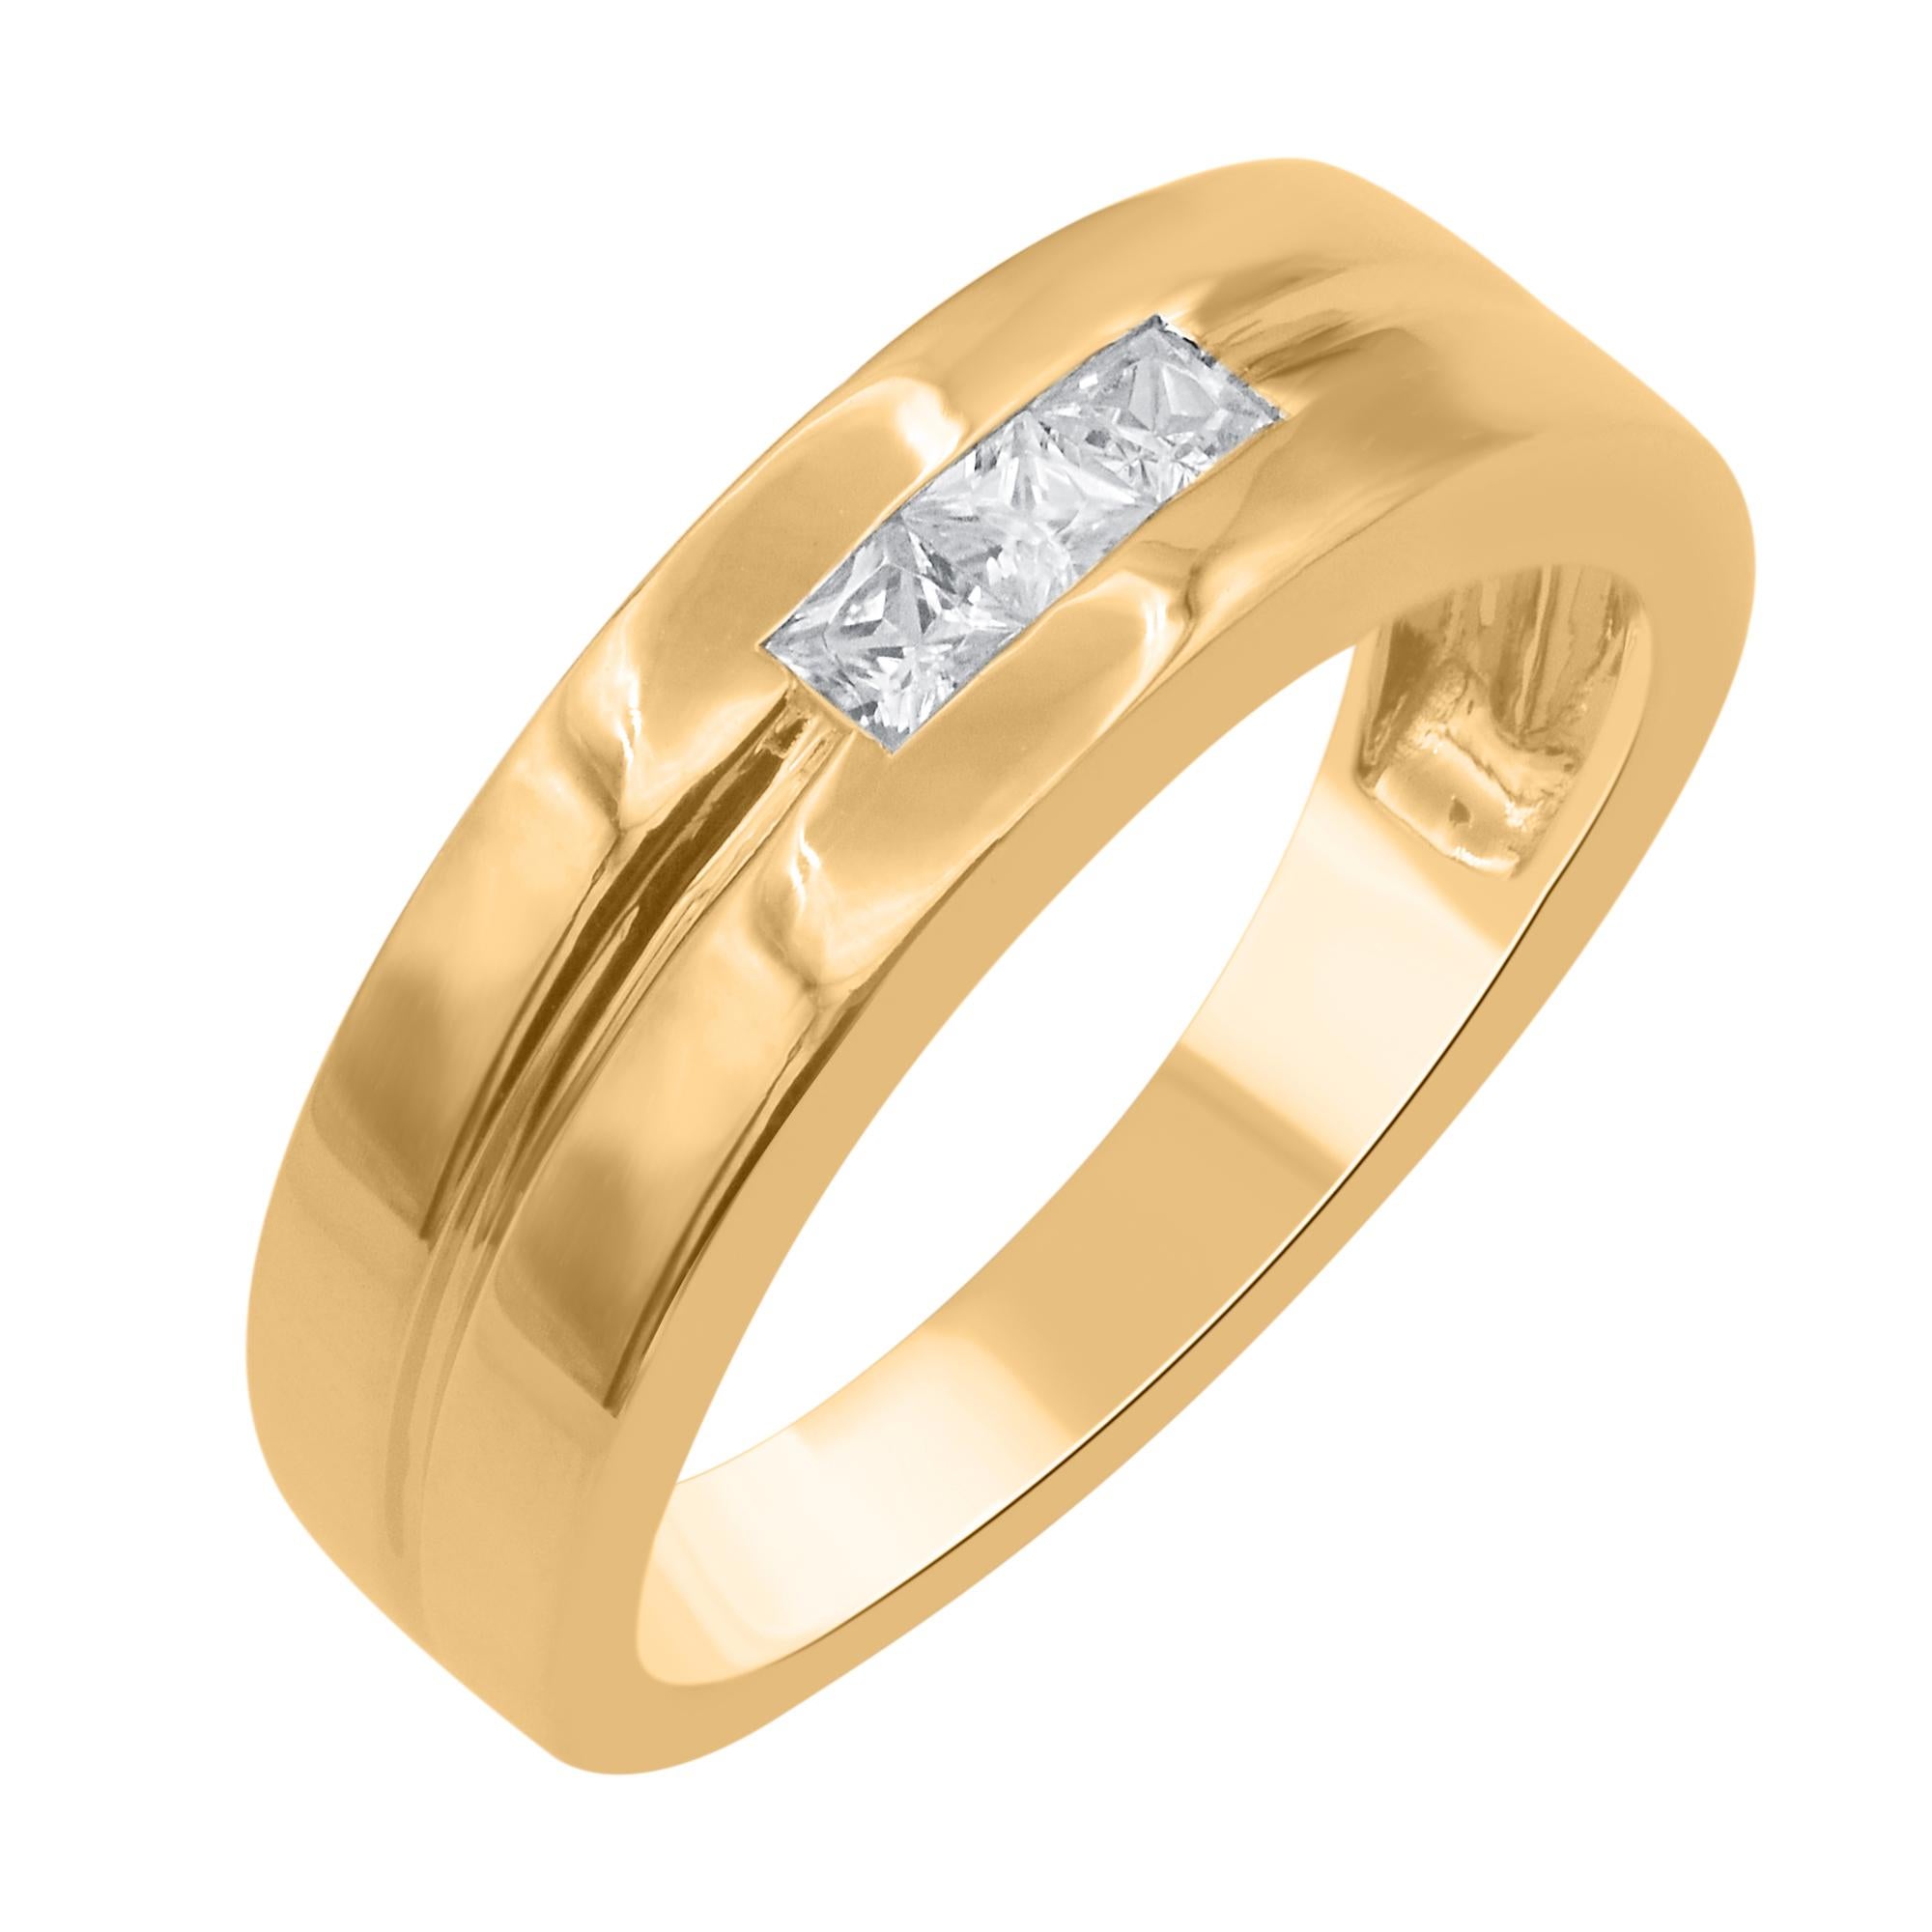 Dieser Ehering für Männer zeichnet sich durch 3 auffällige, in der Mitte des Rings gefasste Diamanten aus. Dieses Band glänzt mit 0,30 Karat Diamanten im Prinzessschliff. Die weißen Diamanten sind mit der Farbe H-I und der Reinheit I-2 eingestuft.